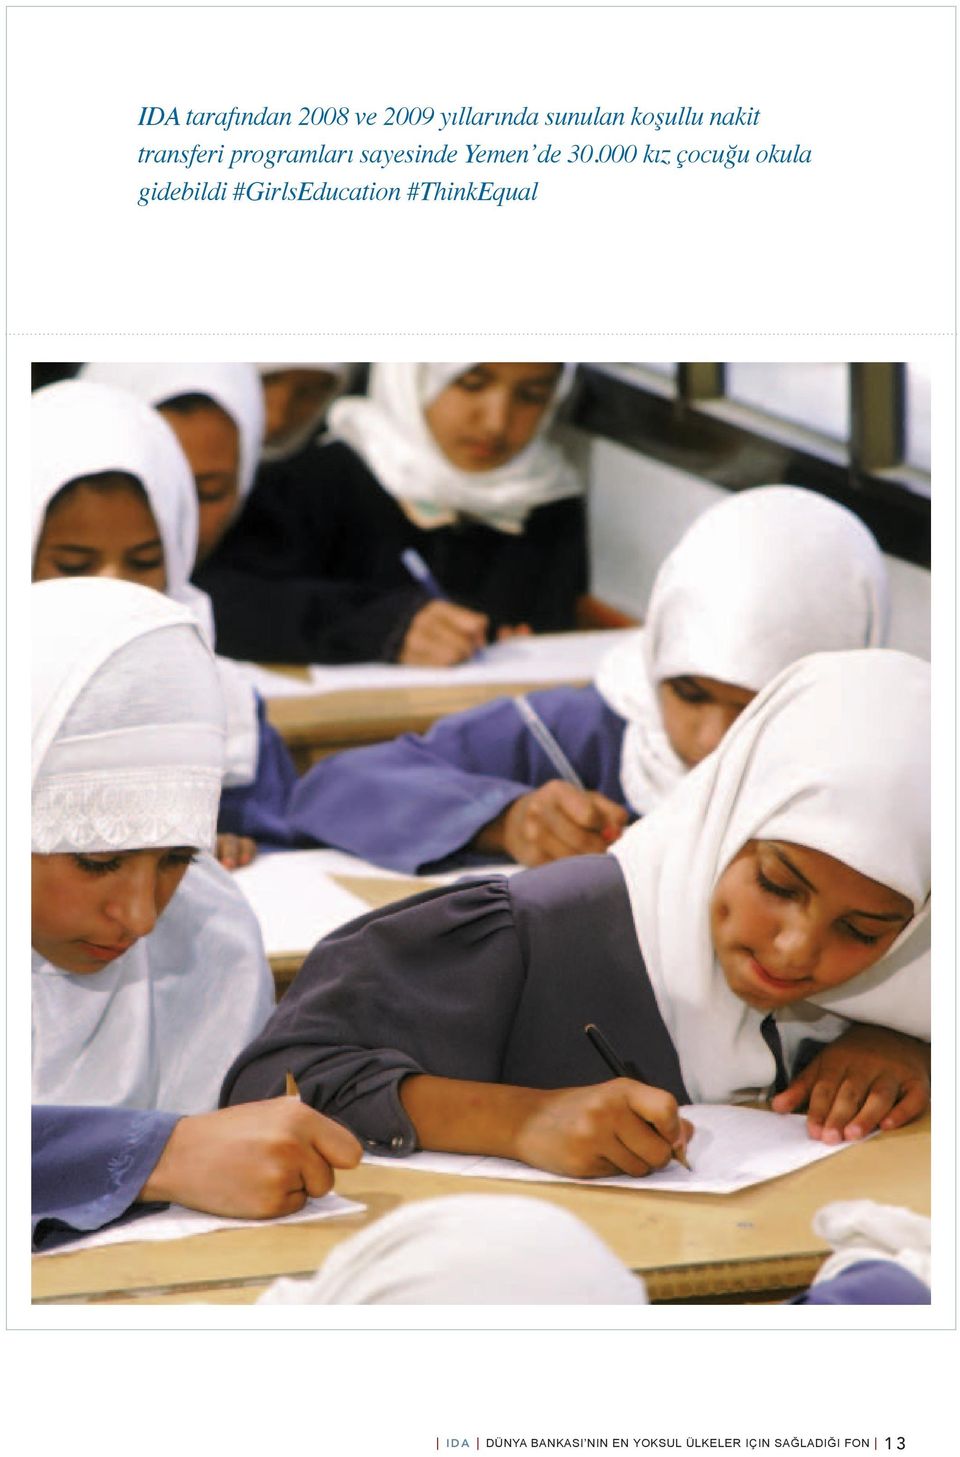 000 kız çocuğu okula gidebildi #GirlsEducation